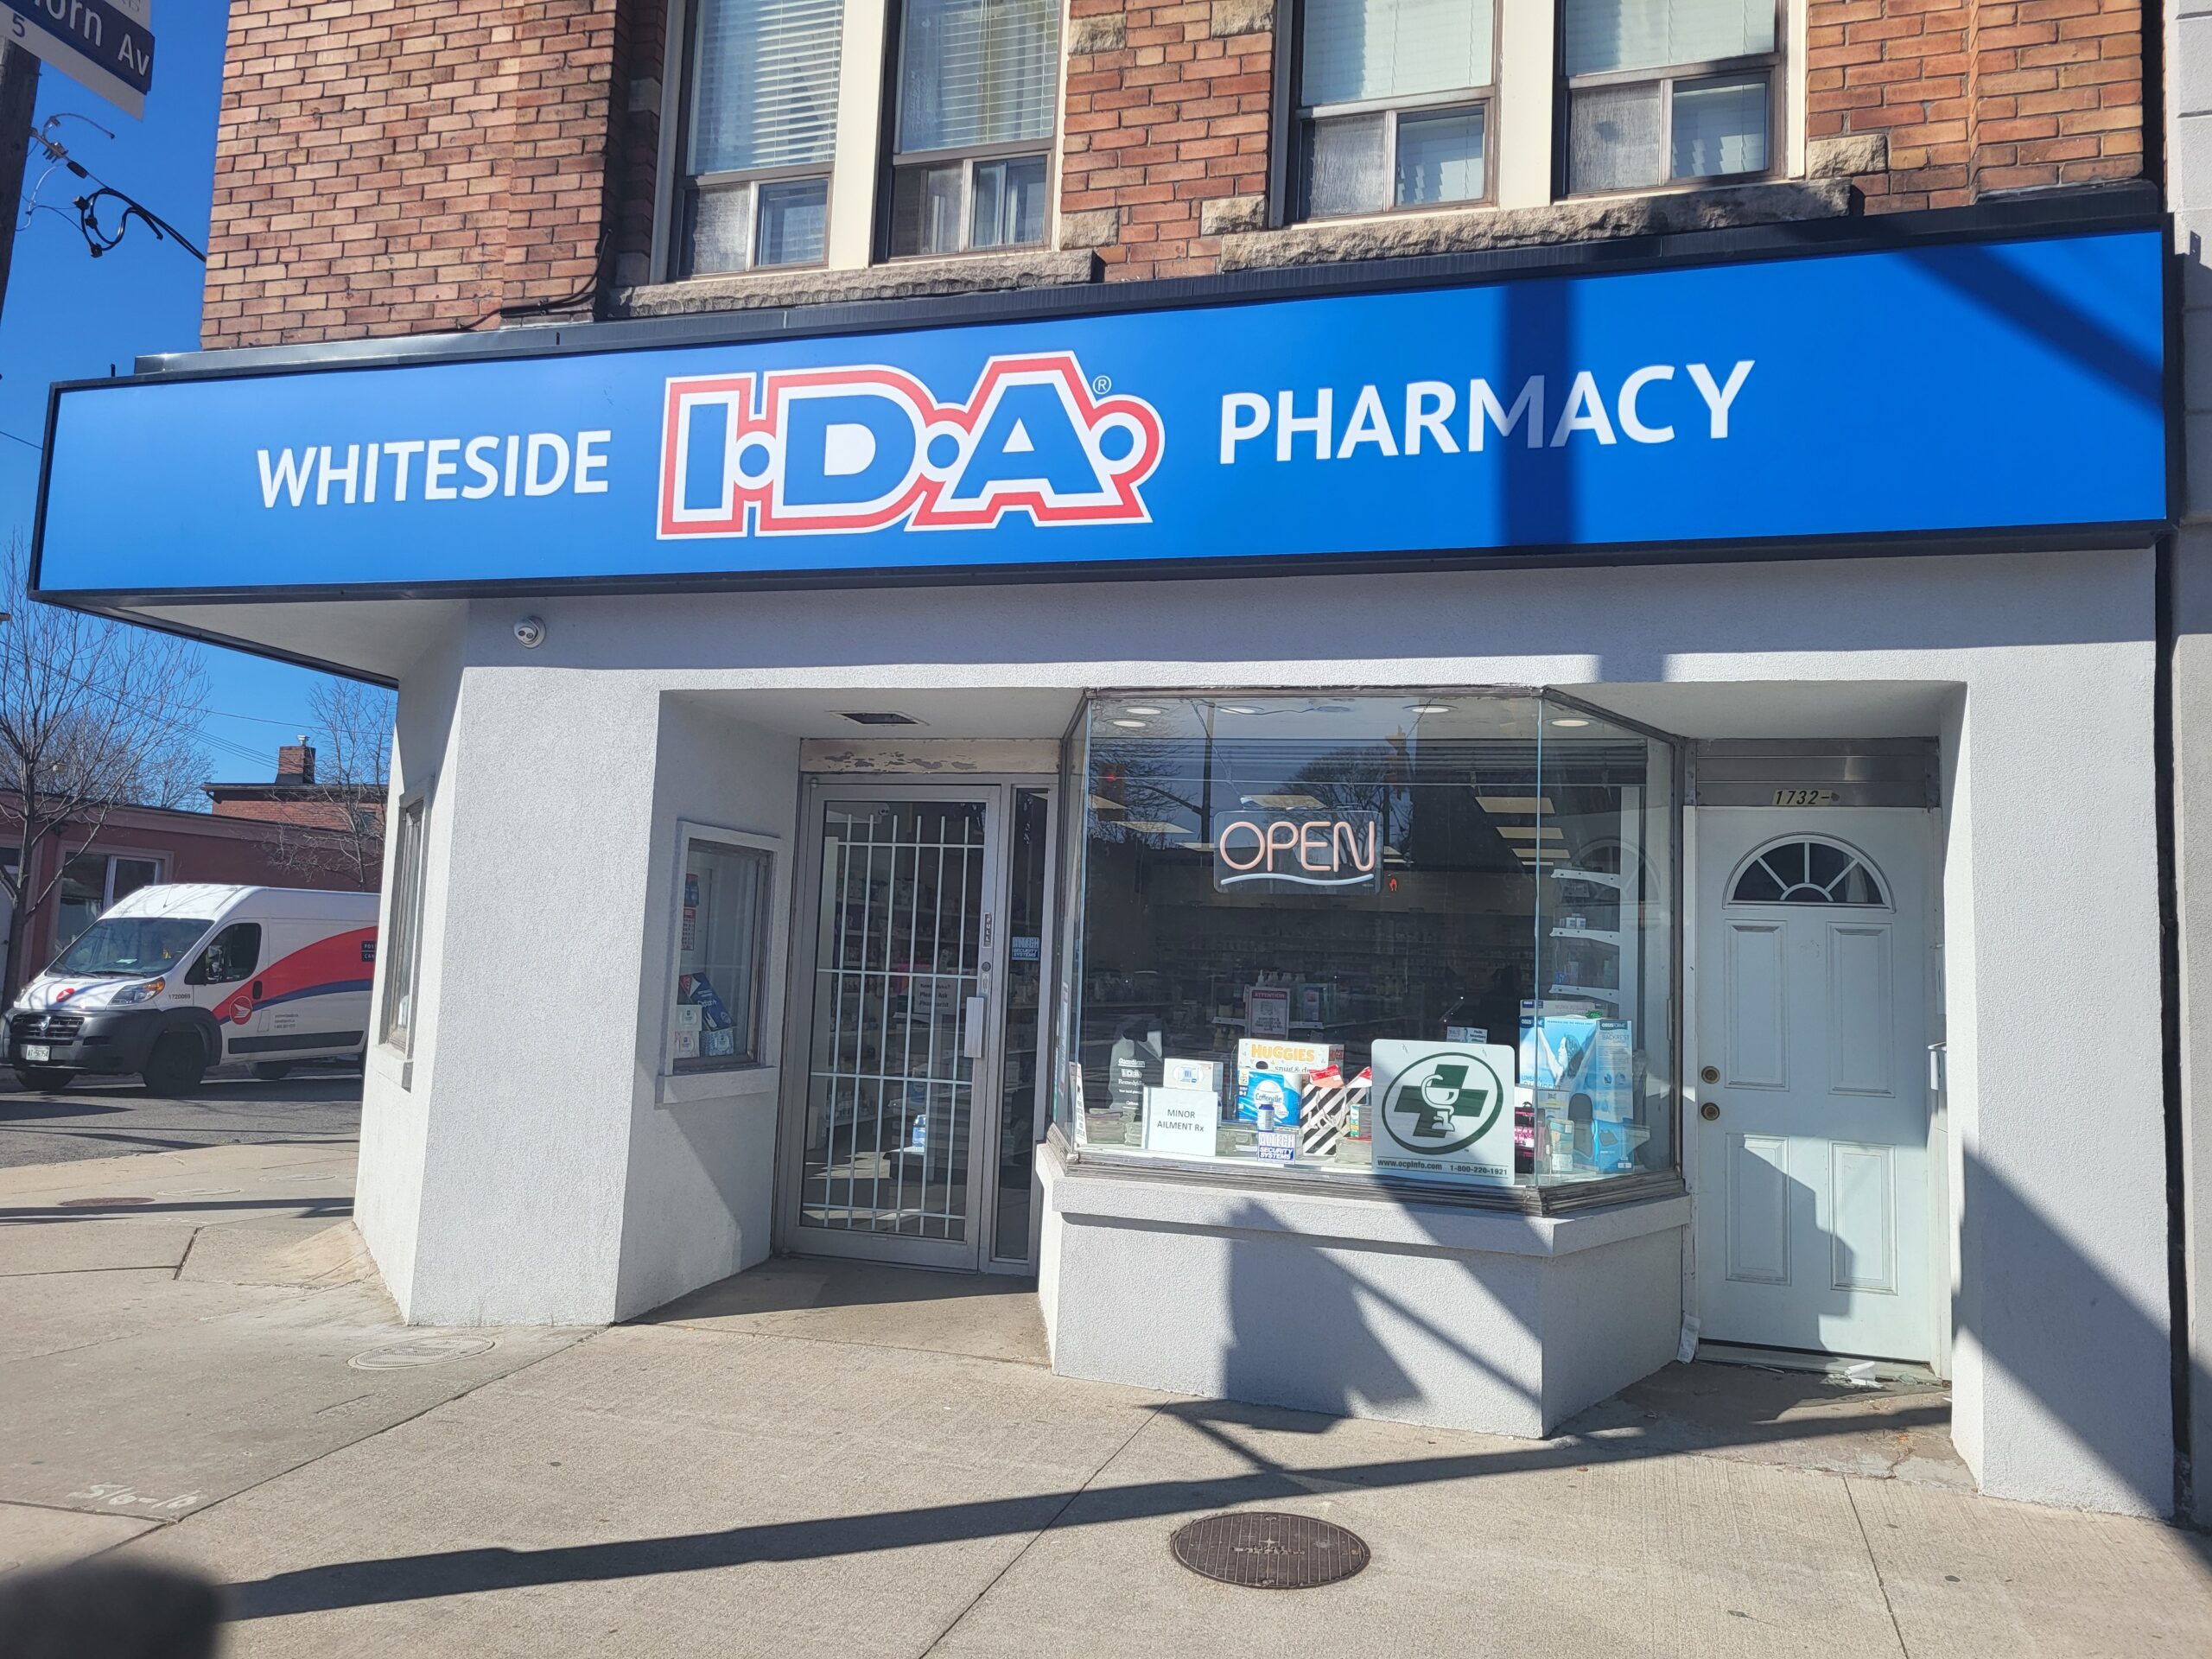 Featured image for “Whiteside IDA Pharmacy”